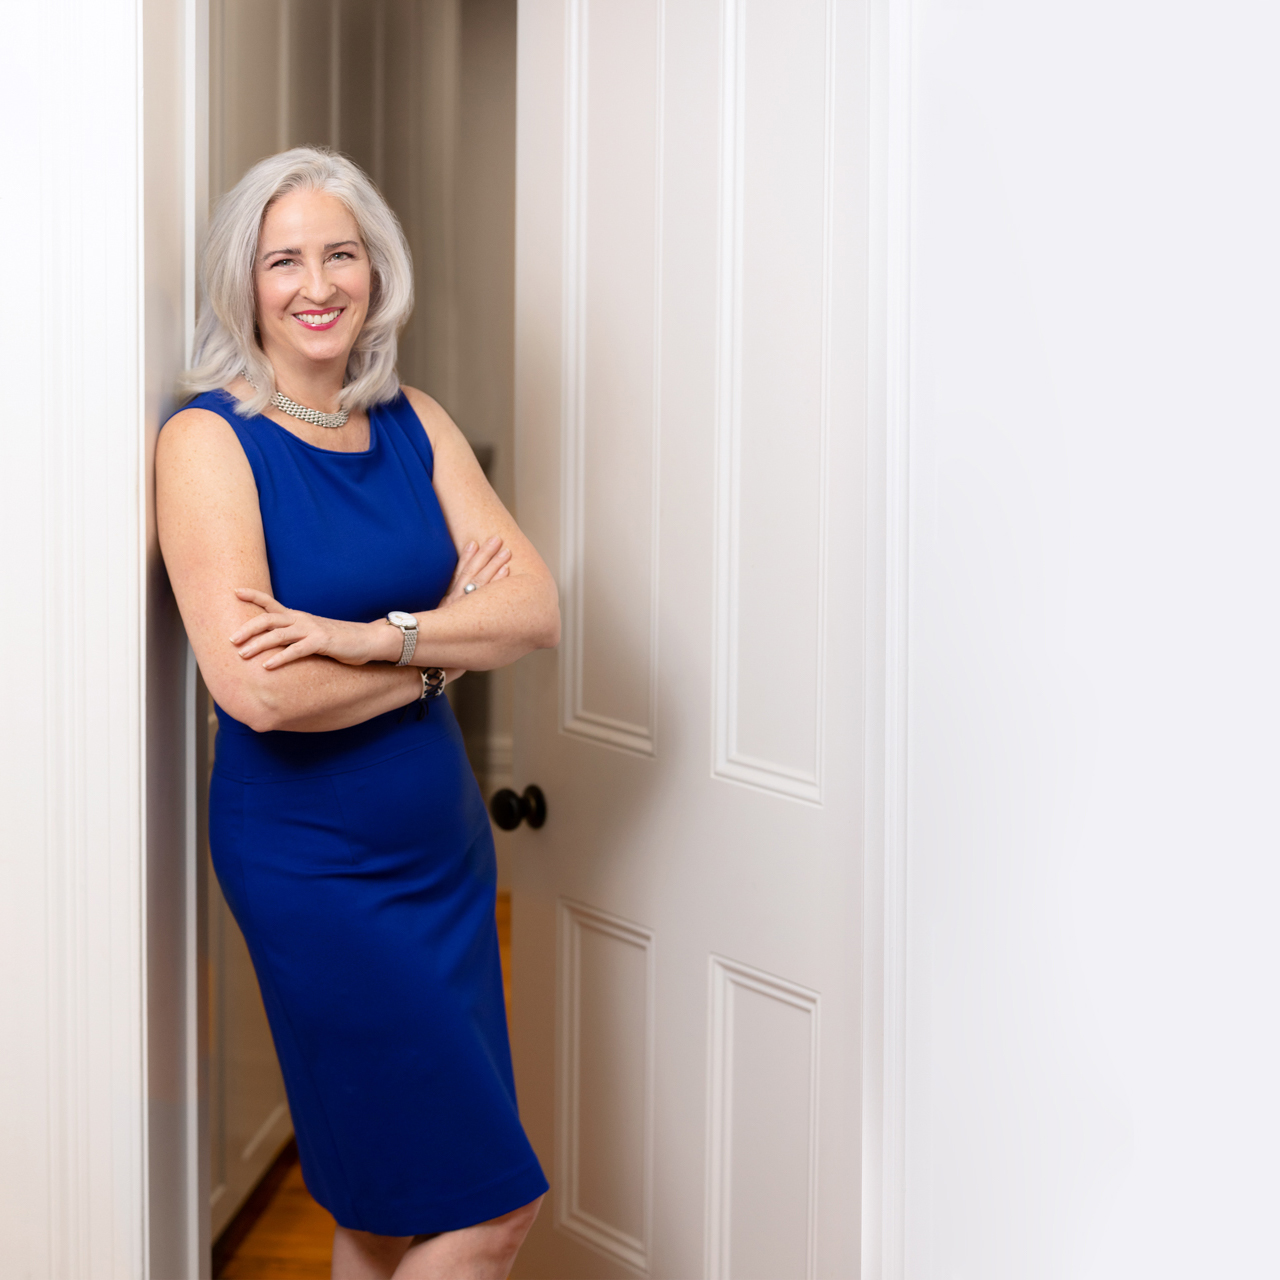 Business woman standing in a doorway